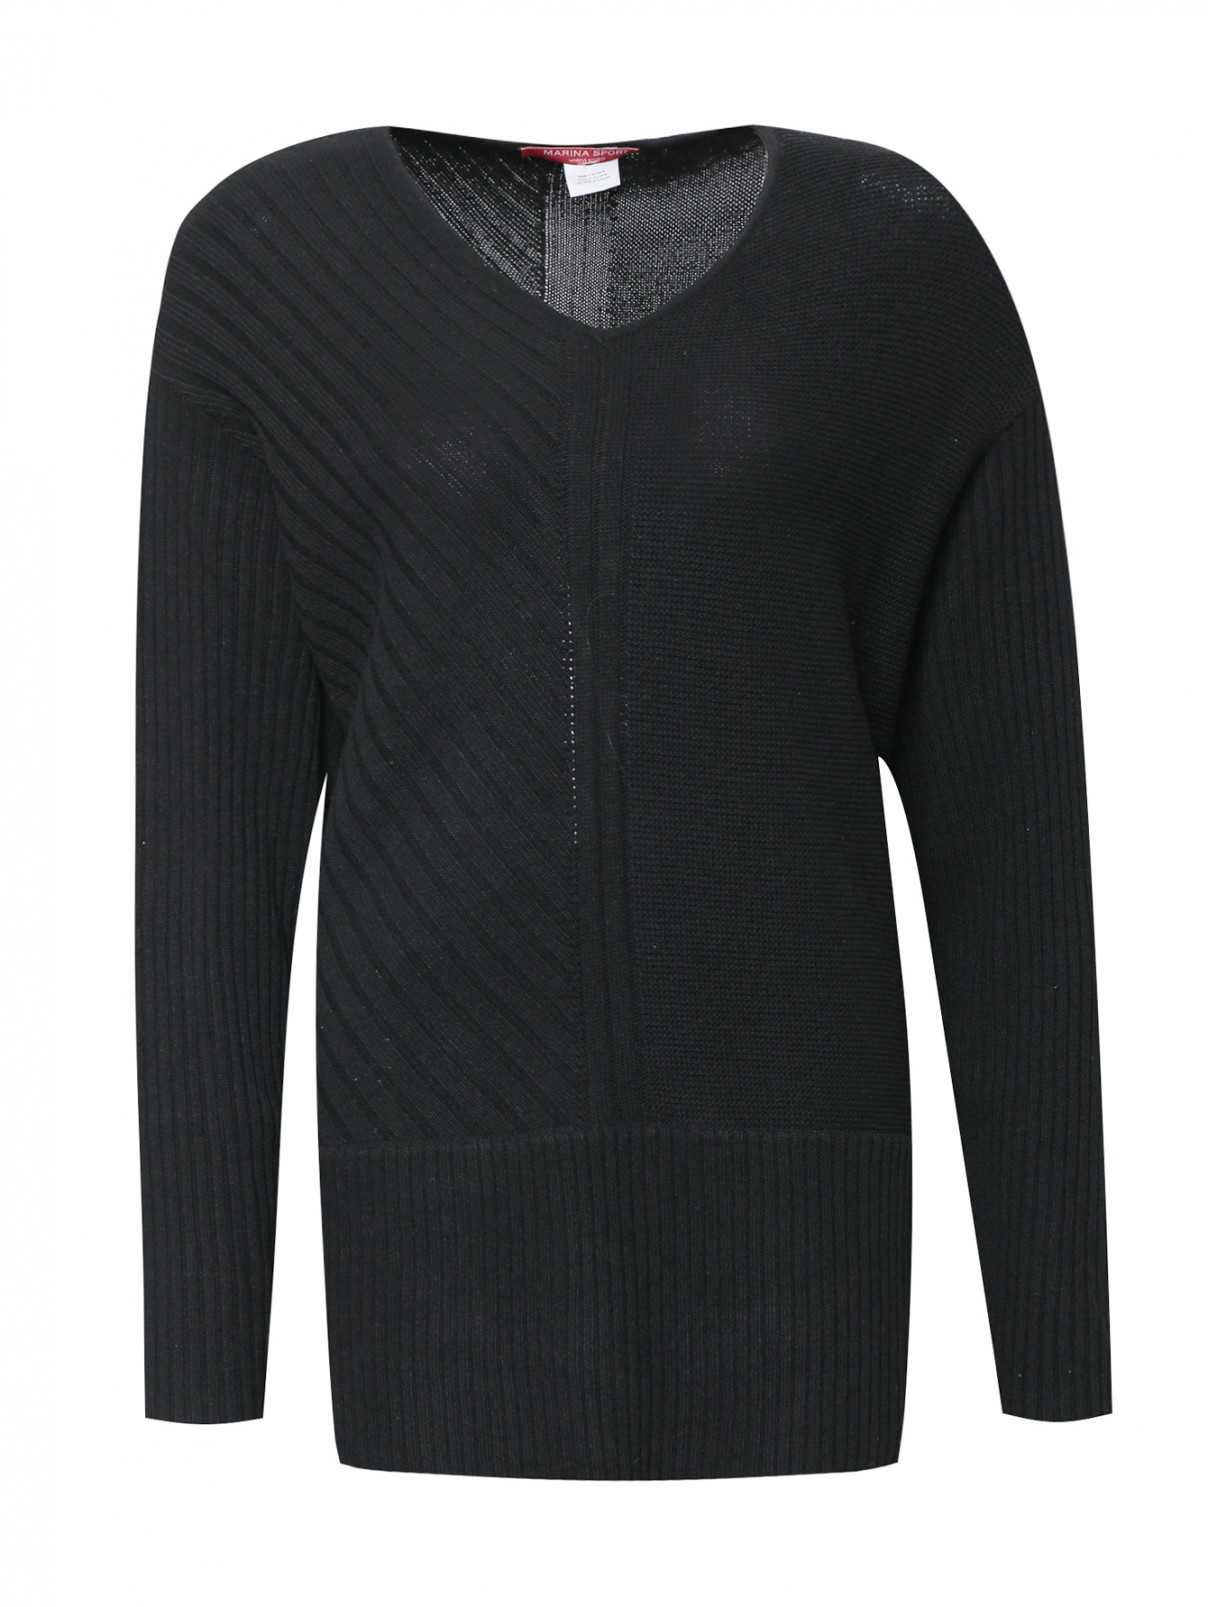 Джемпер фактурной вязки с длинными рукавами Marina Sport  –  Общий вид  – Цвет:  Черный